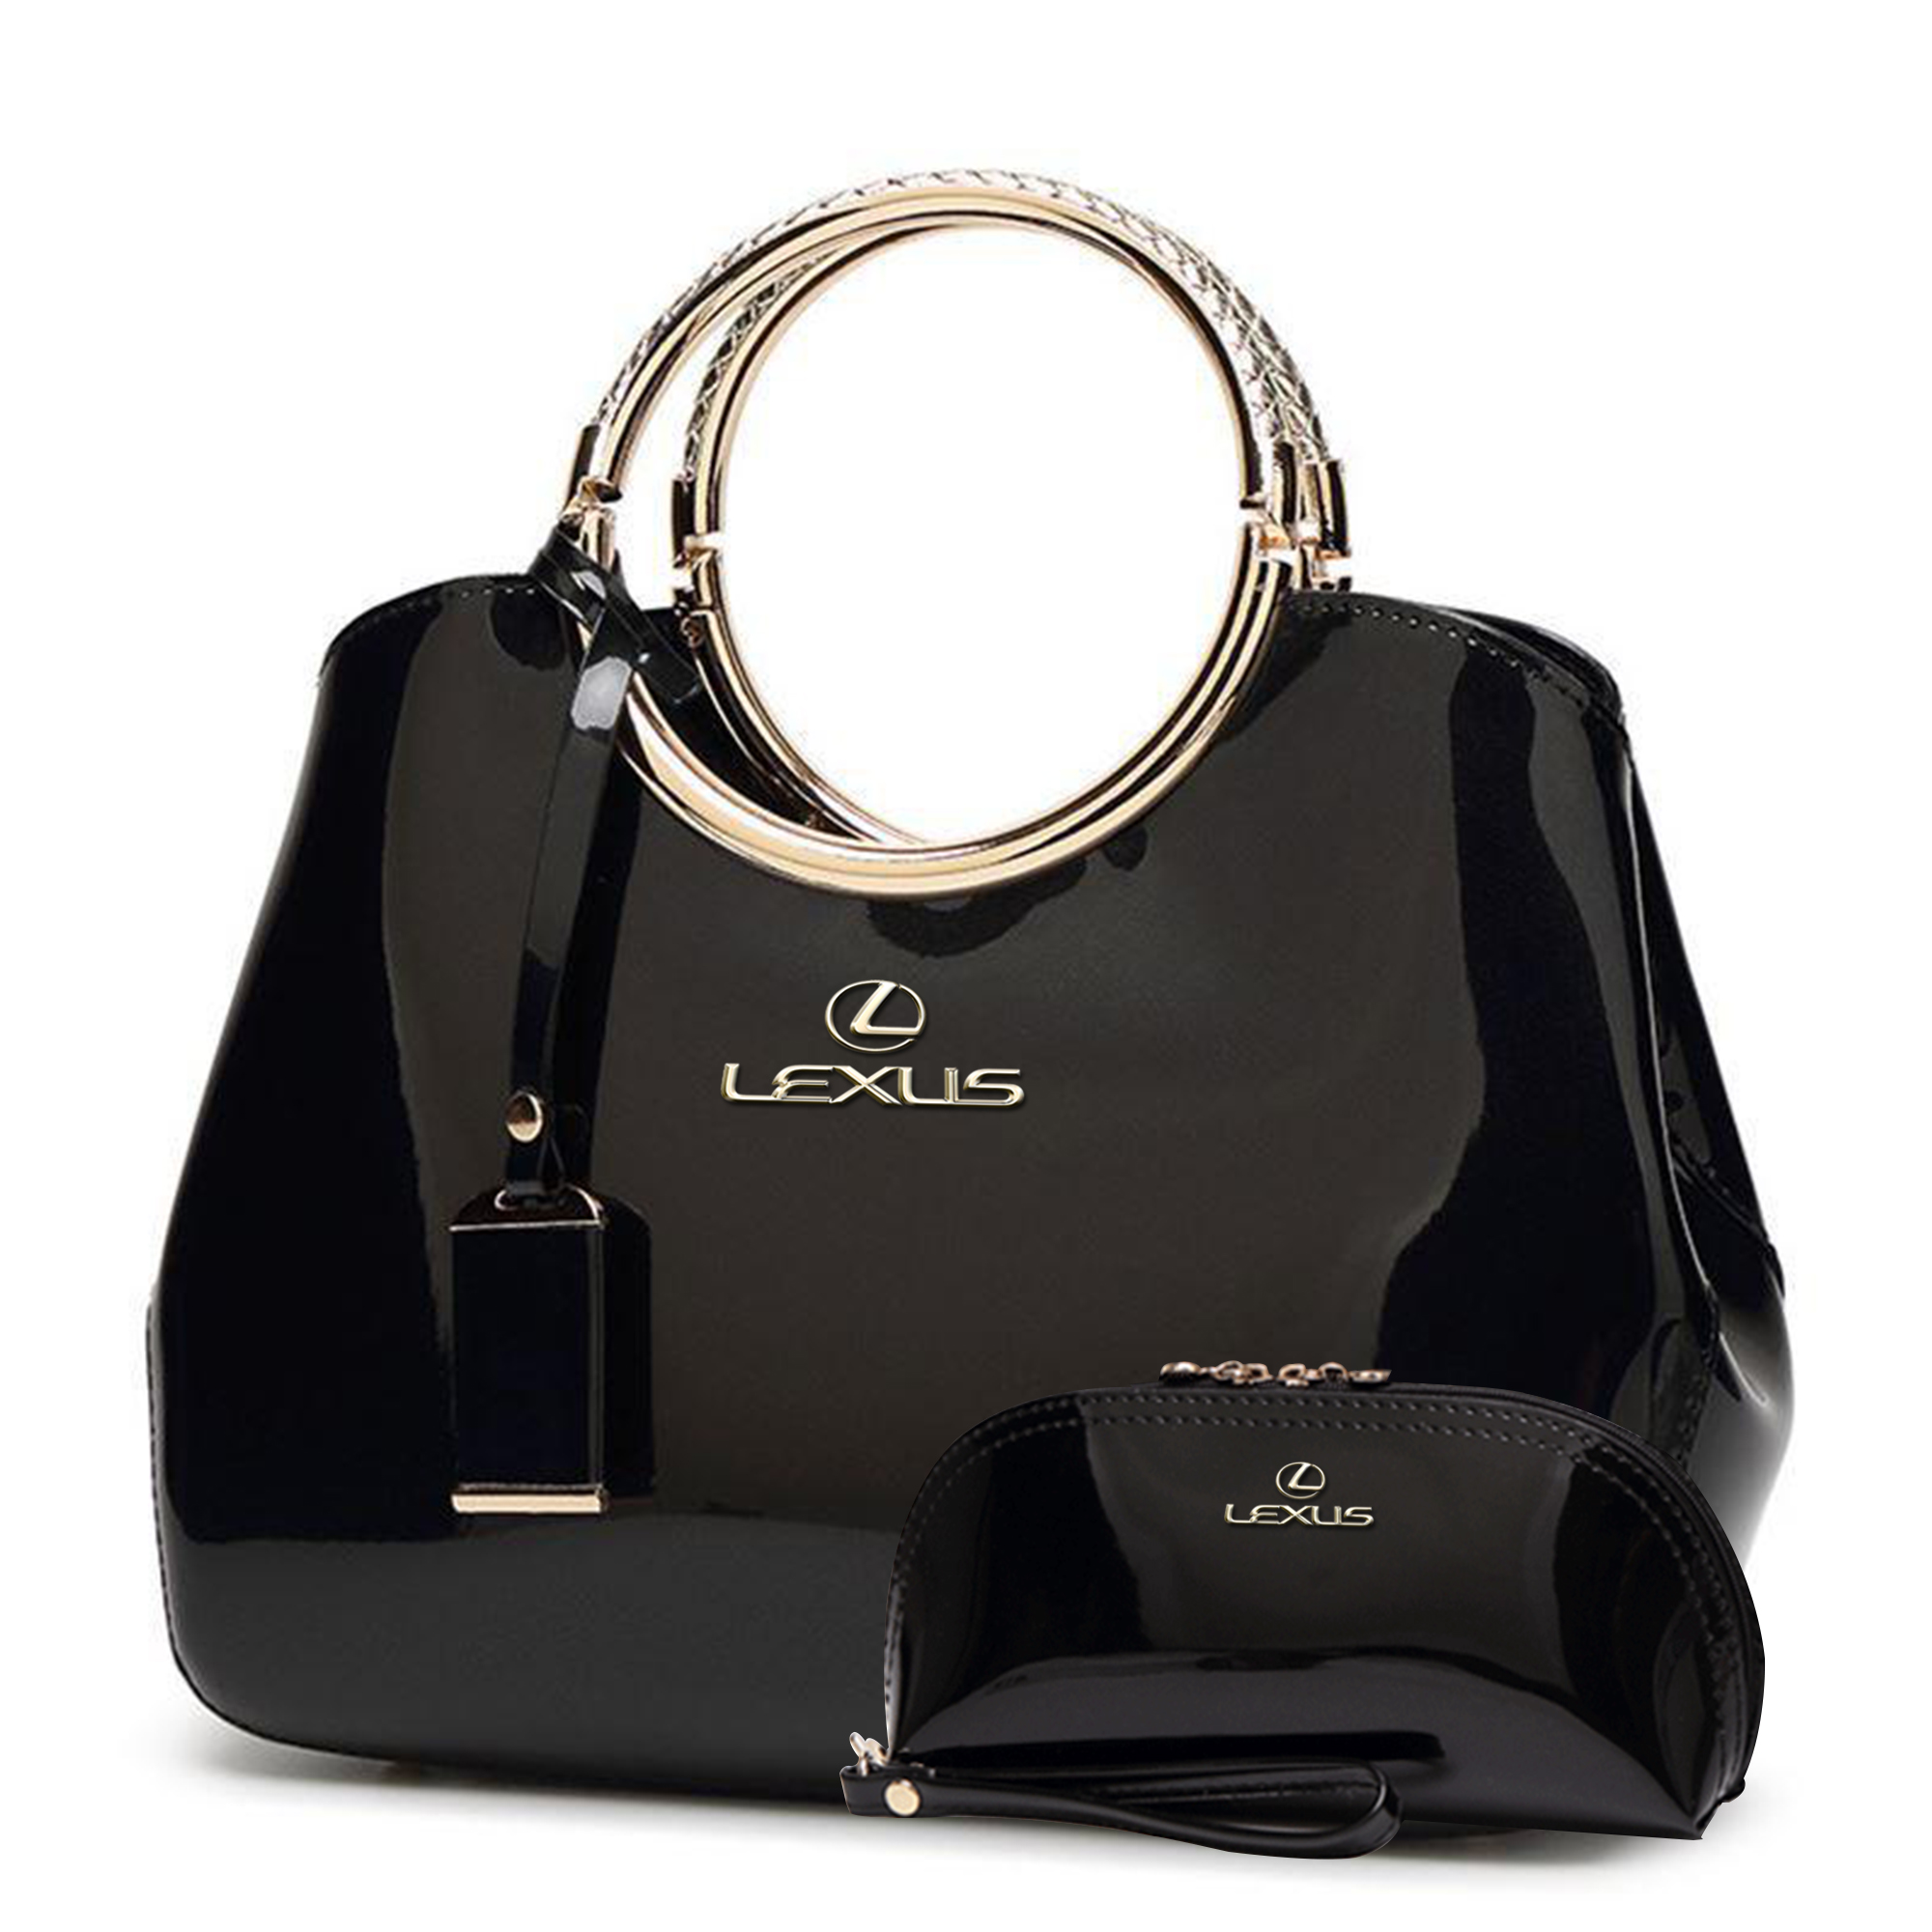 Lexus Deluxe Women Handbag With Free Matching Wallet Best